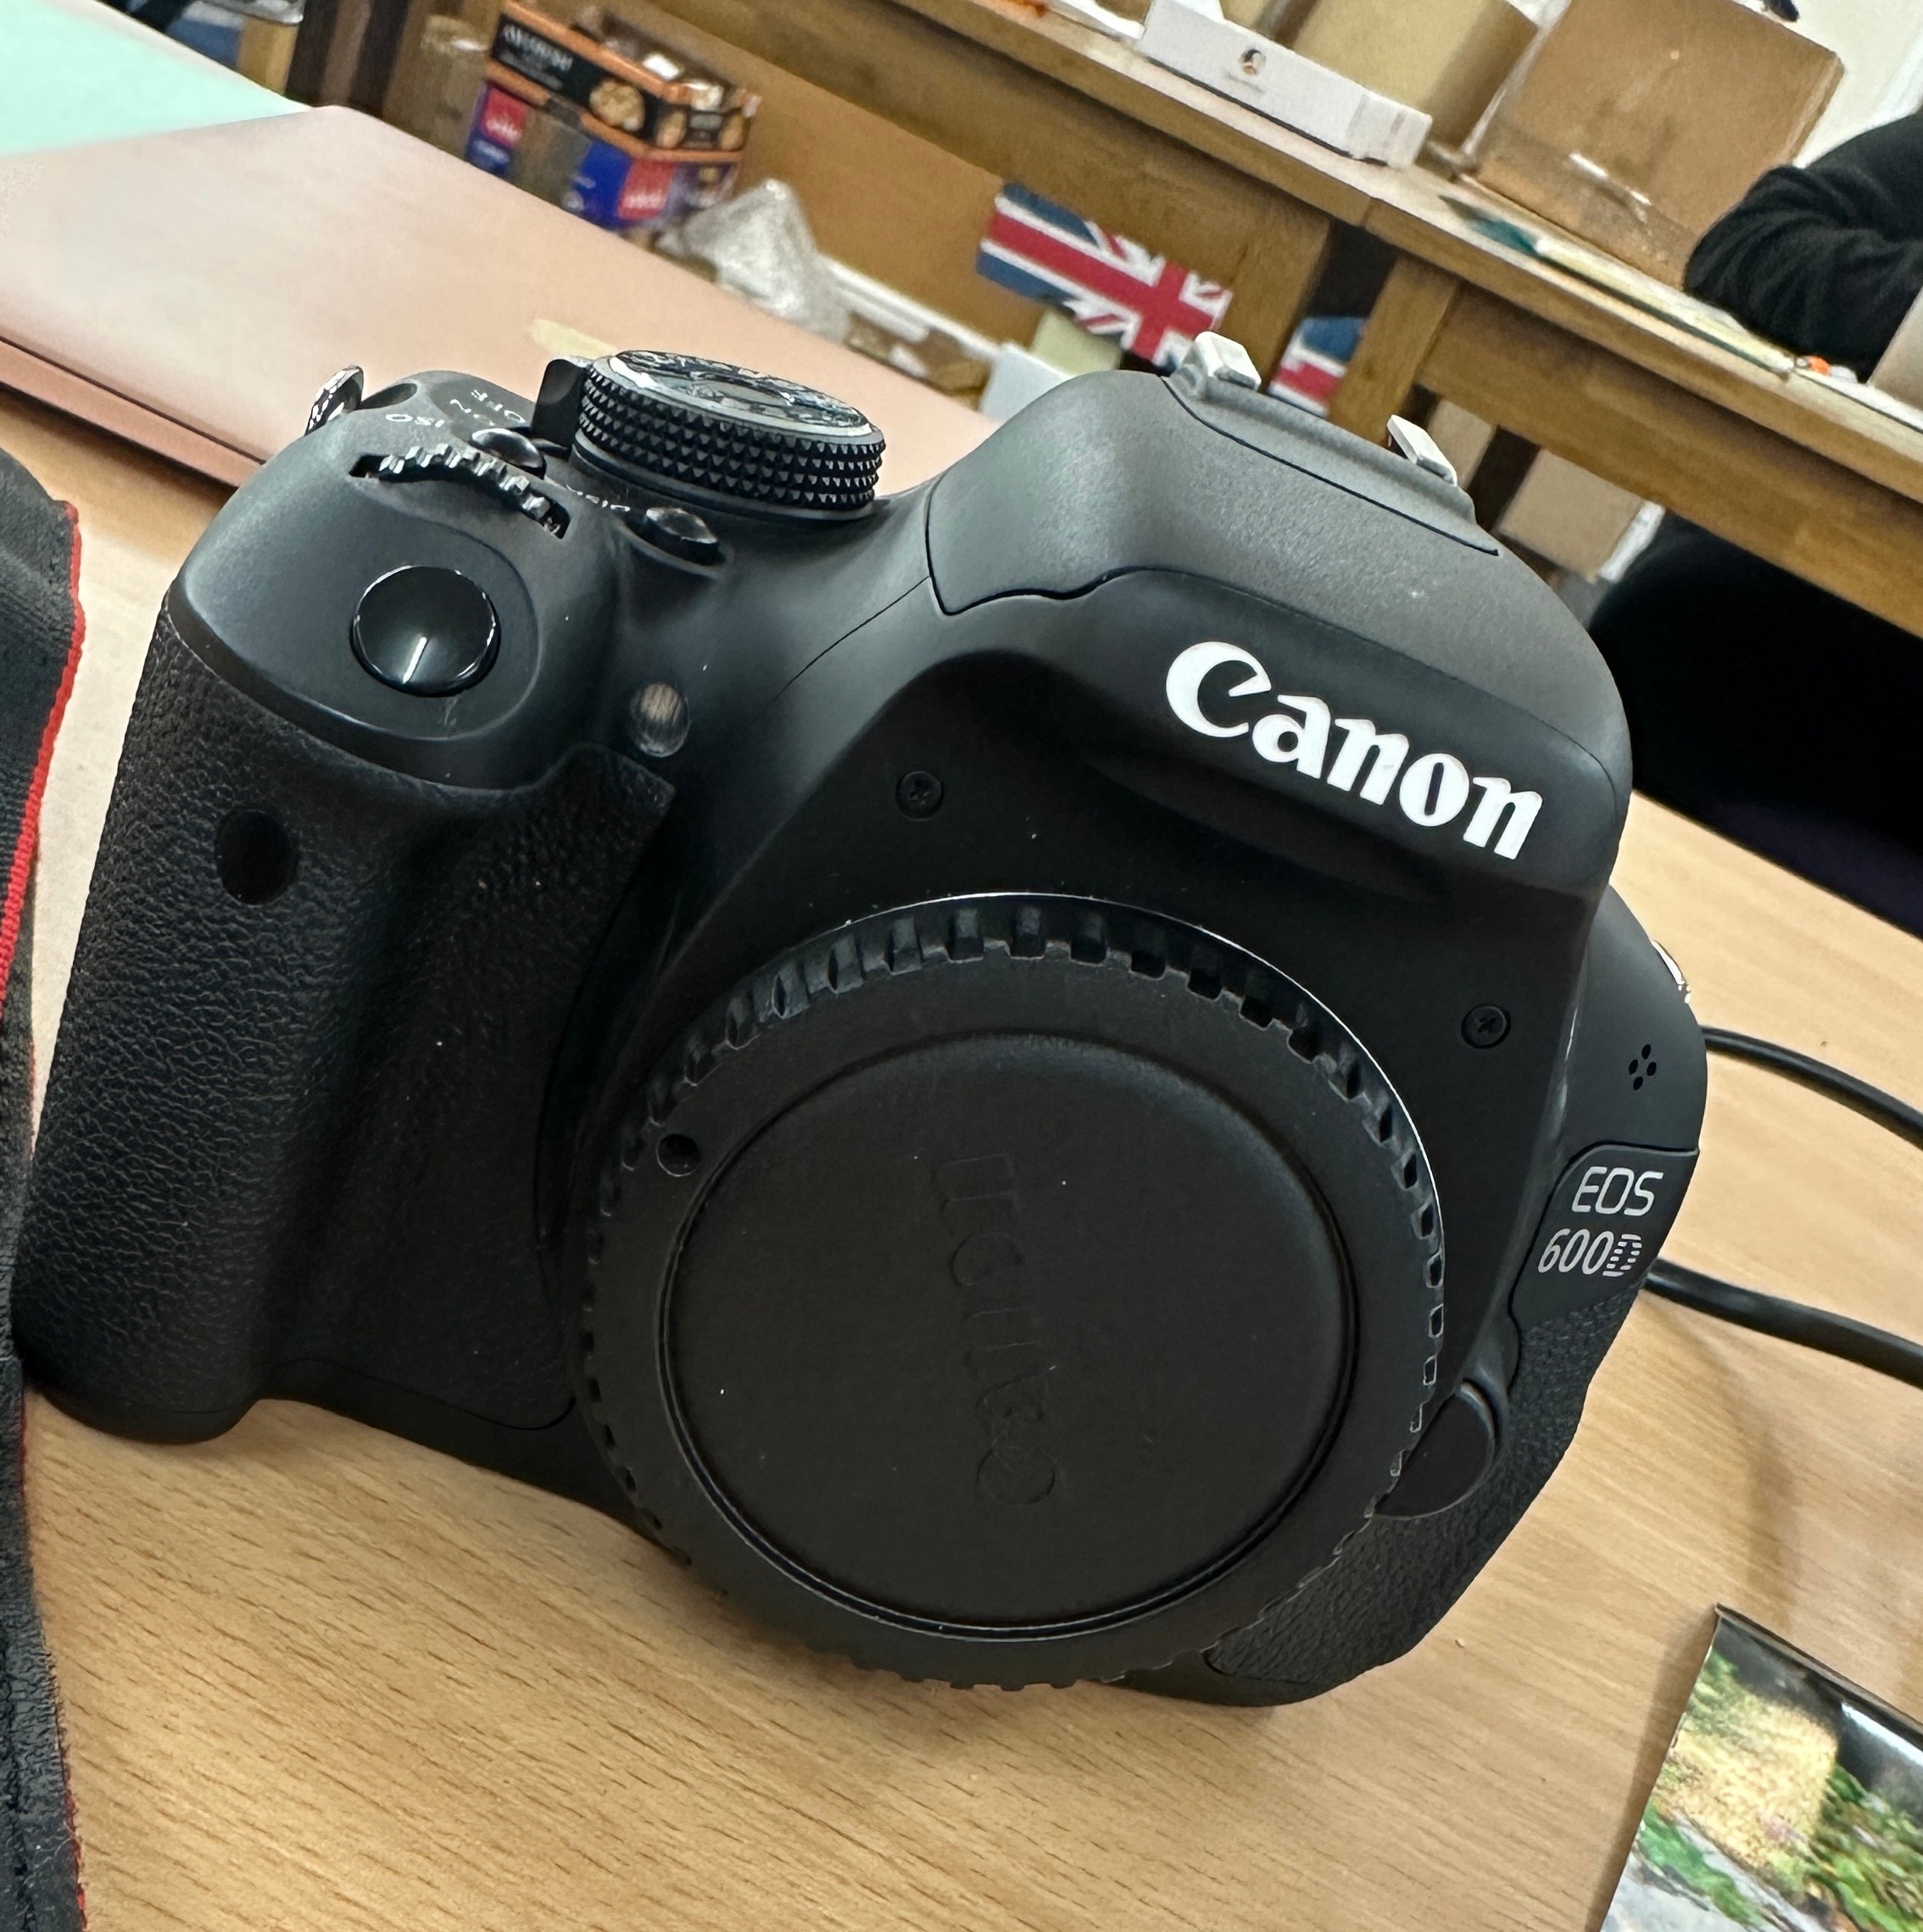 Boxed Canon EOS 600D camera - untested - Bild 2 aus 5